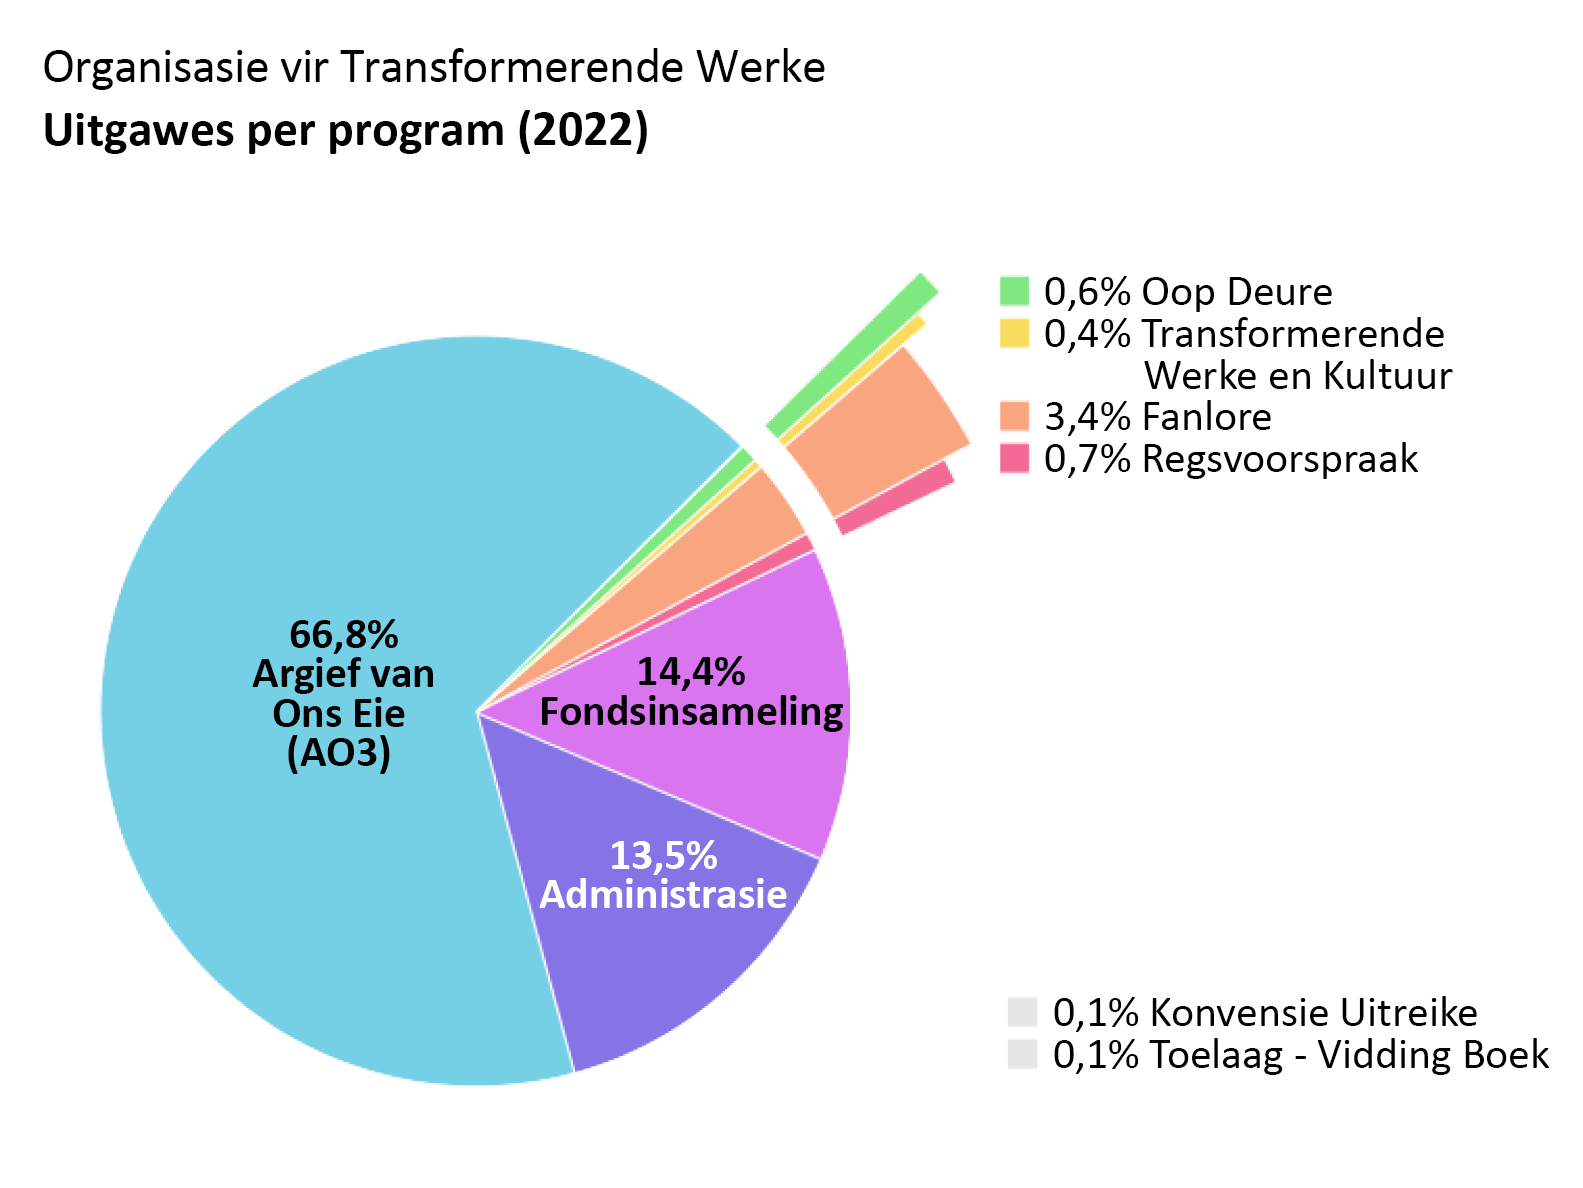 Uitgawes volgens program: Argief van Ons Eie: 66,8%. Oop Deure: 0,6%. Transformerende Werke en Kultuur: 0,4%. Fanlore: 3,4%. Regsvoorspraak: 0,7%. Konvensie Uitreike: 0,1%.  Toelaag – Vidding Boek: 0,1%. Administrasie: 13,5%. Fondsinsameling: 14,4%.